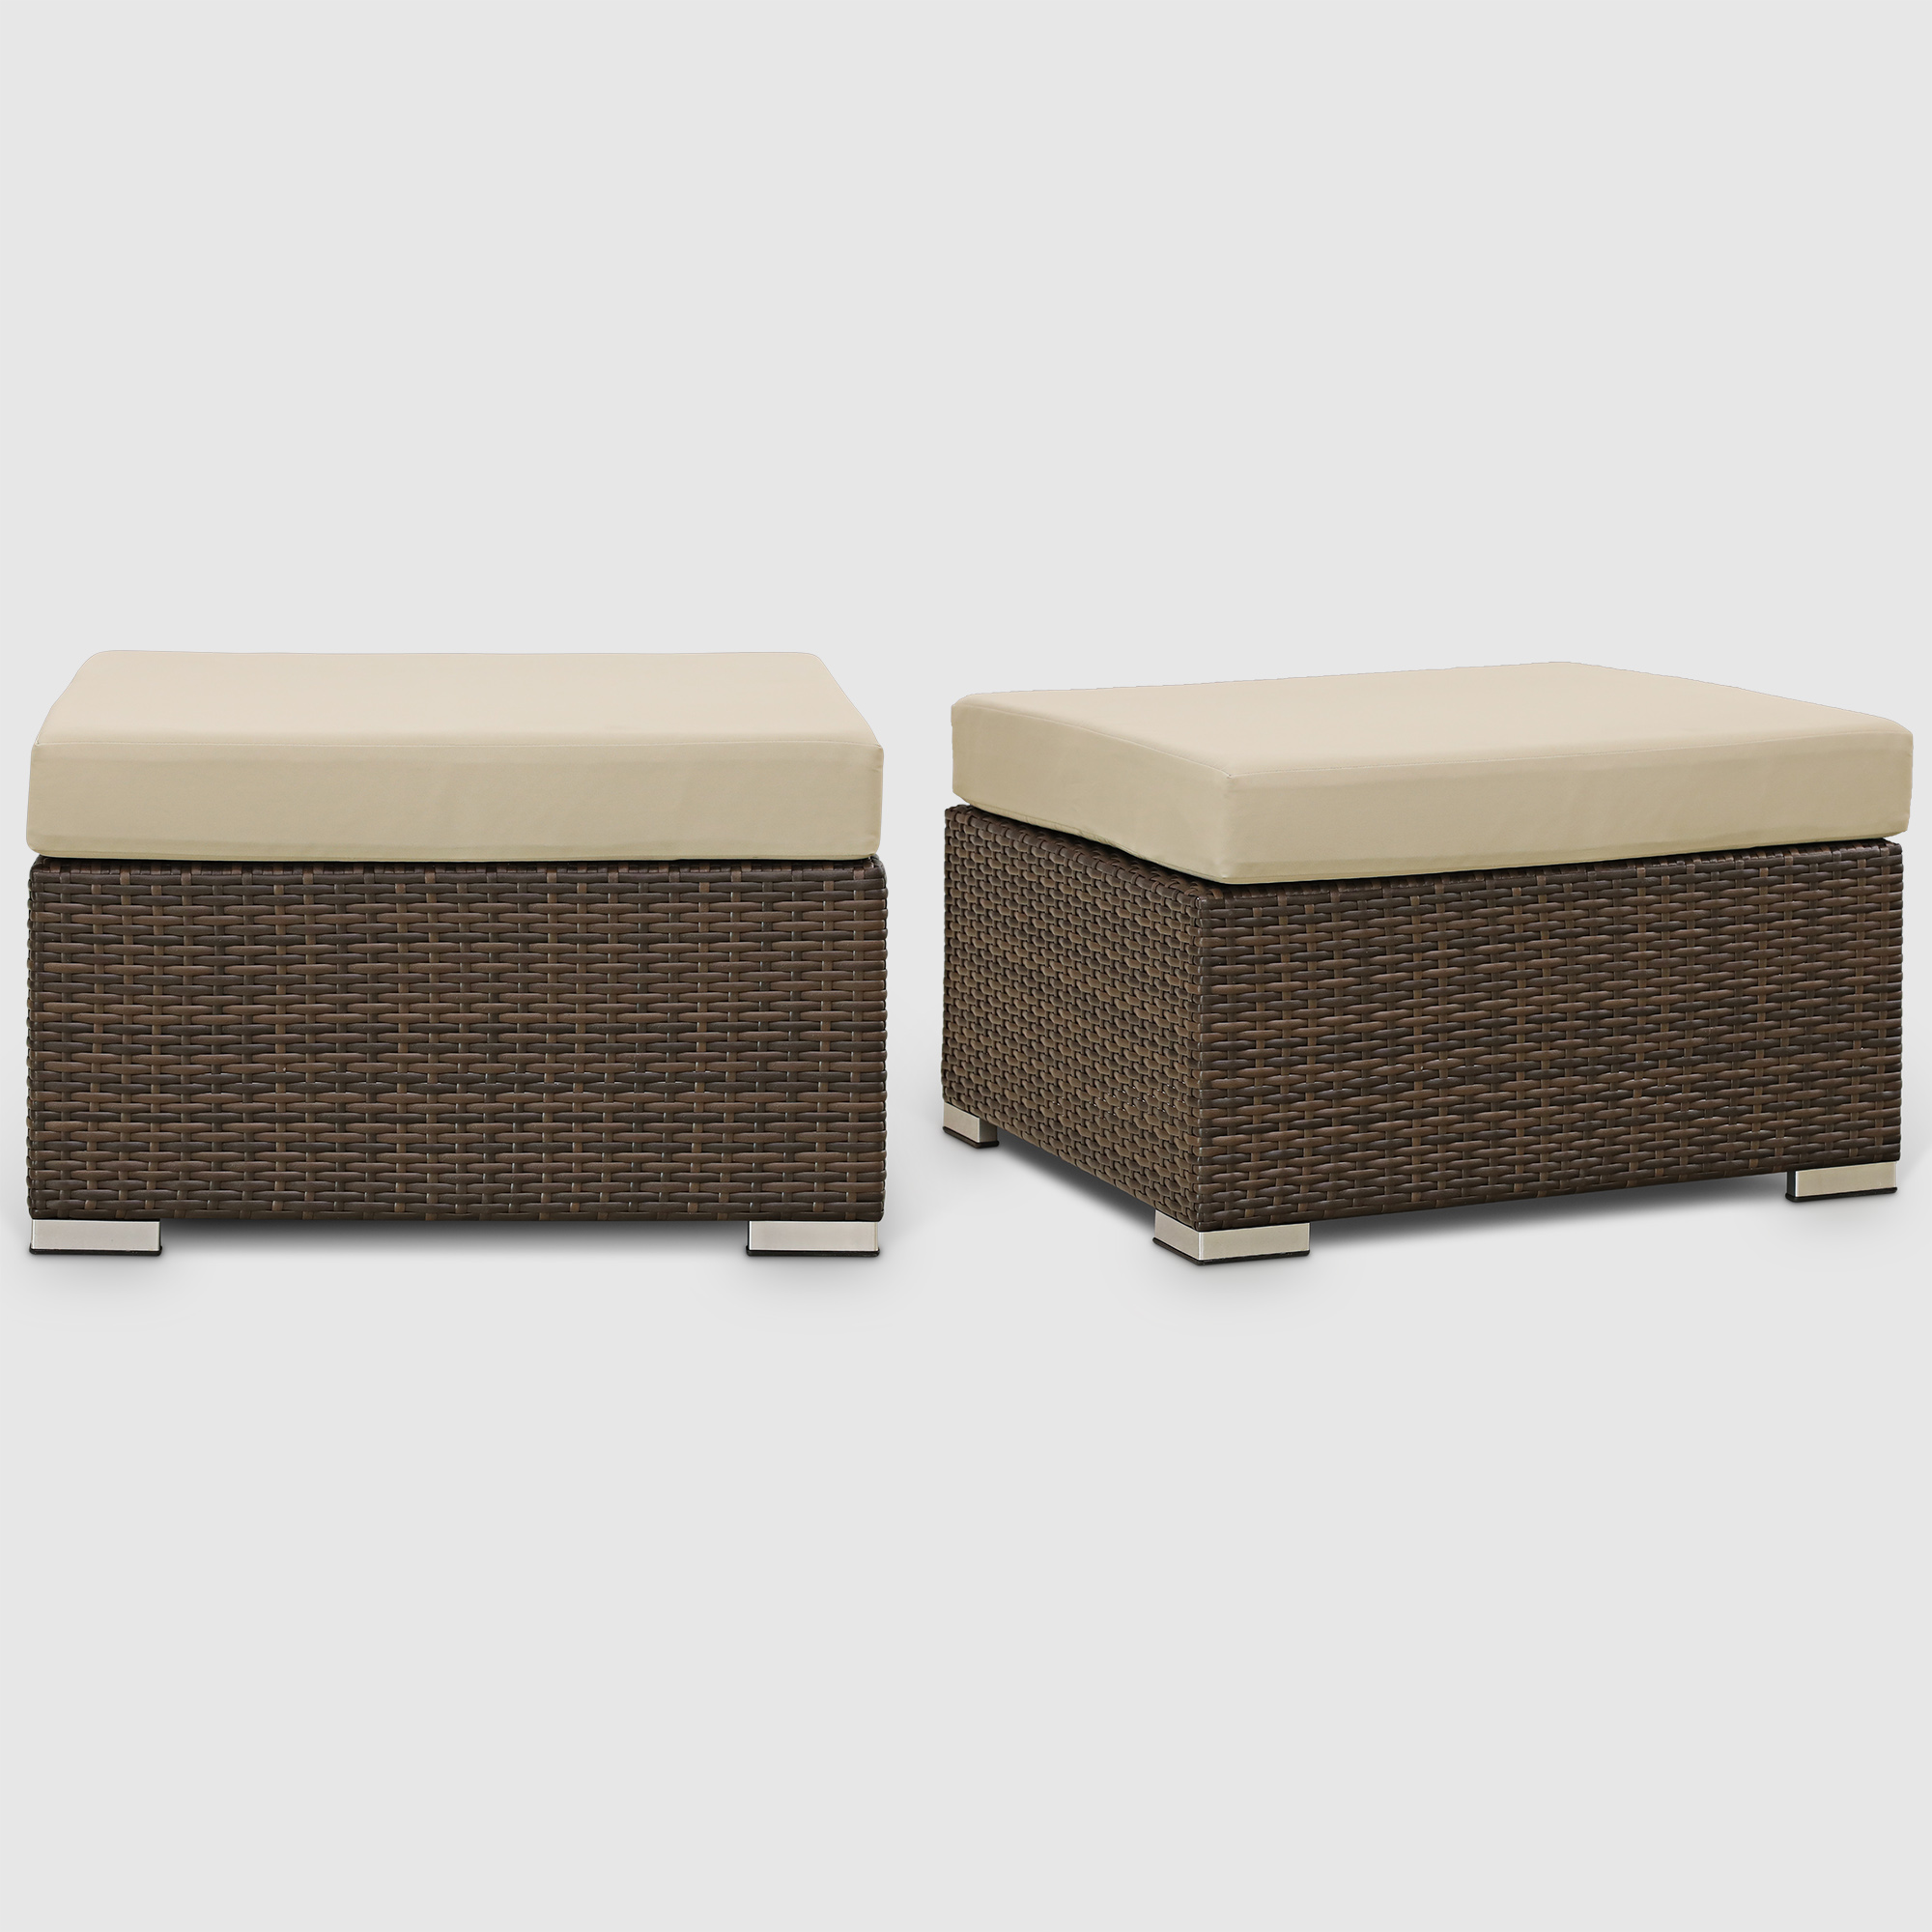 Комплект мебели Ns Rattan Cleo коричнево-бежевый 7 предметов, цвет коричневый, размер 199х68х72 - фото 12